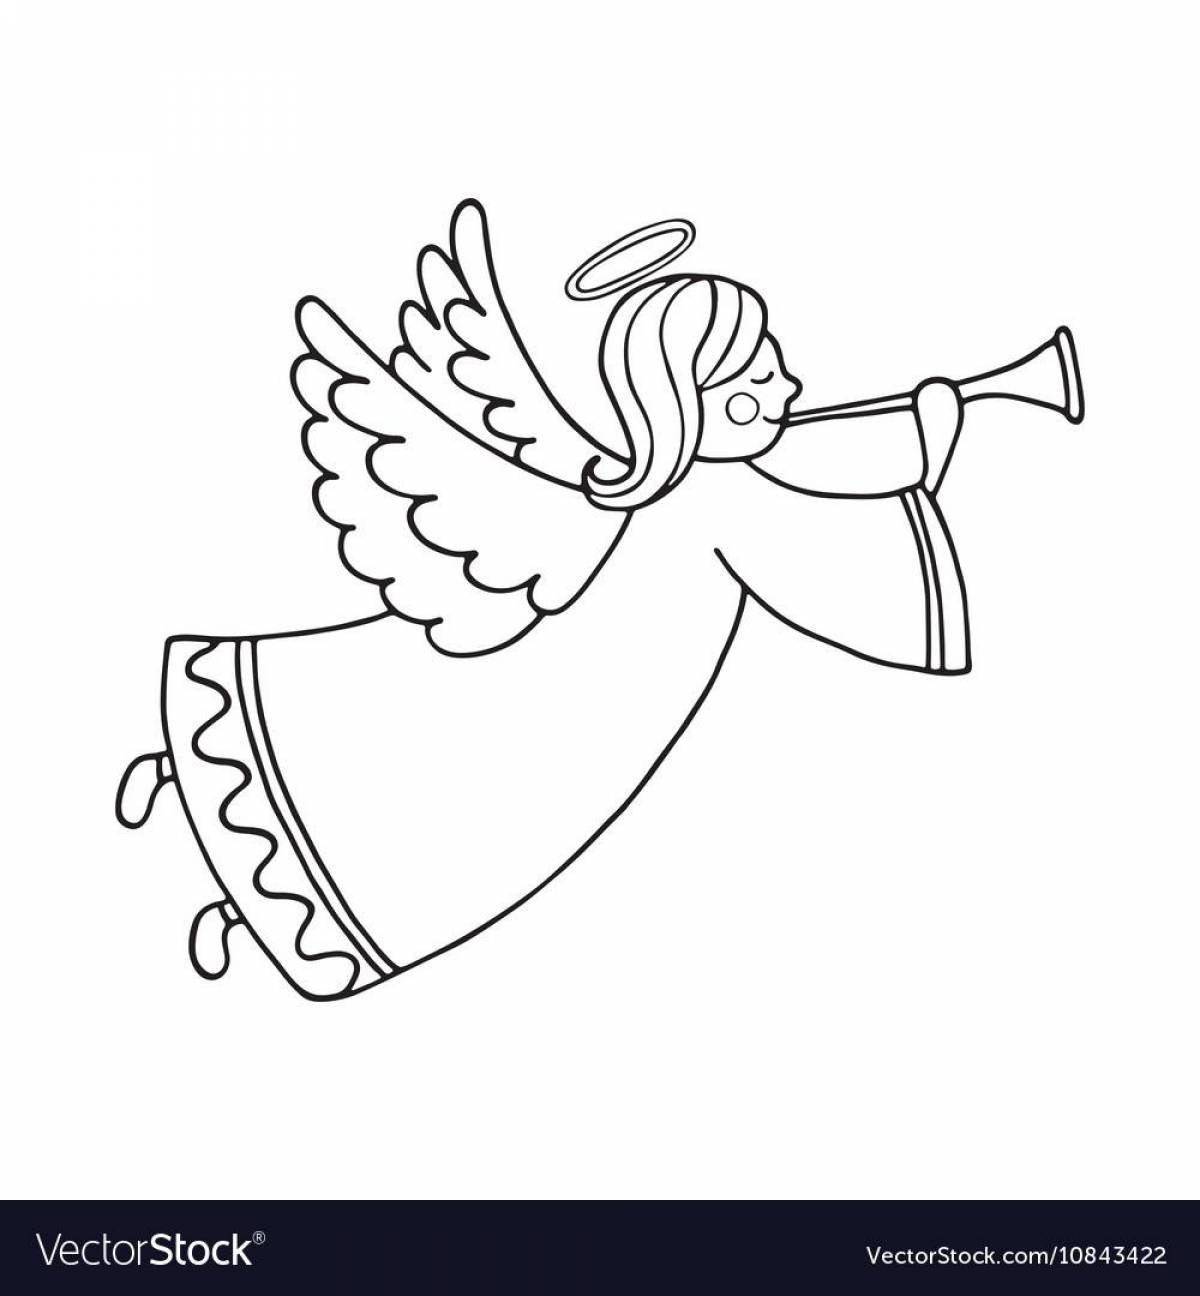 Брызги раскраски ангел с крыльями для детей